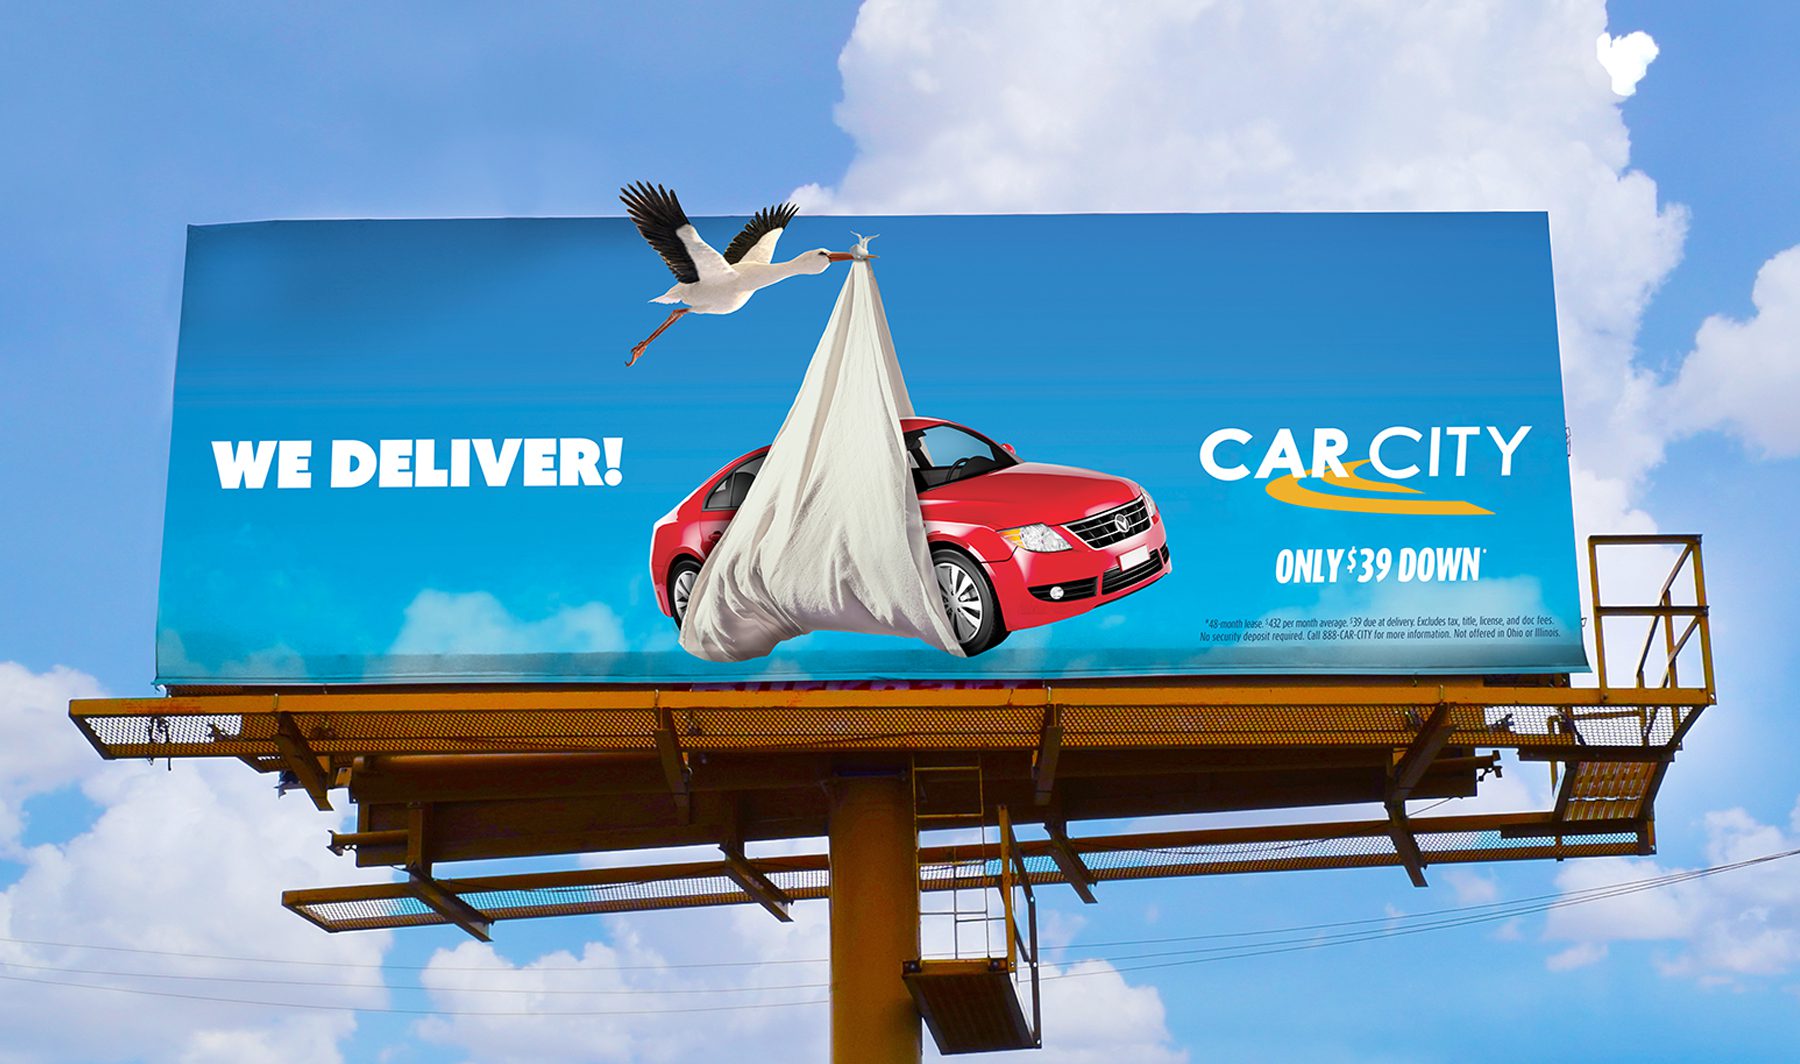 Car City. We Deliver. Stork delivering a red car.